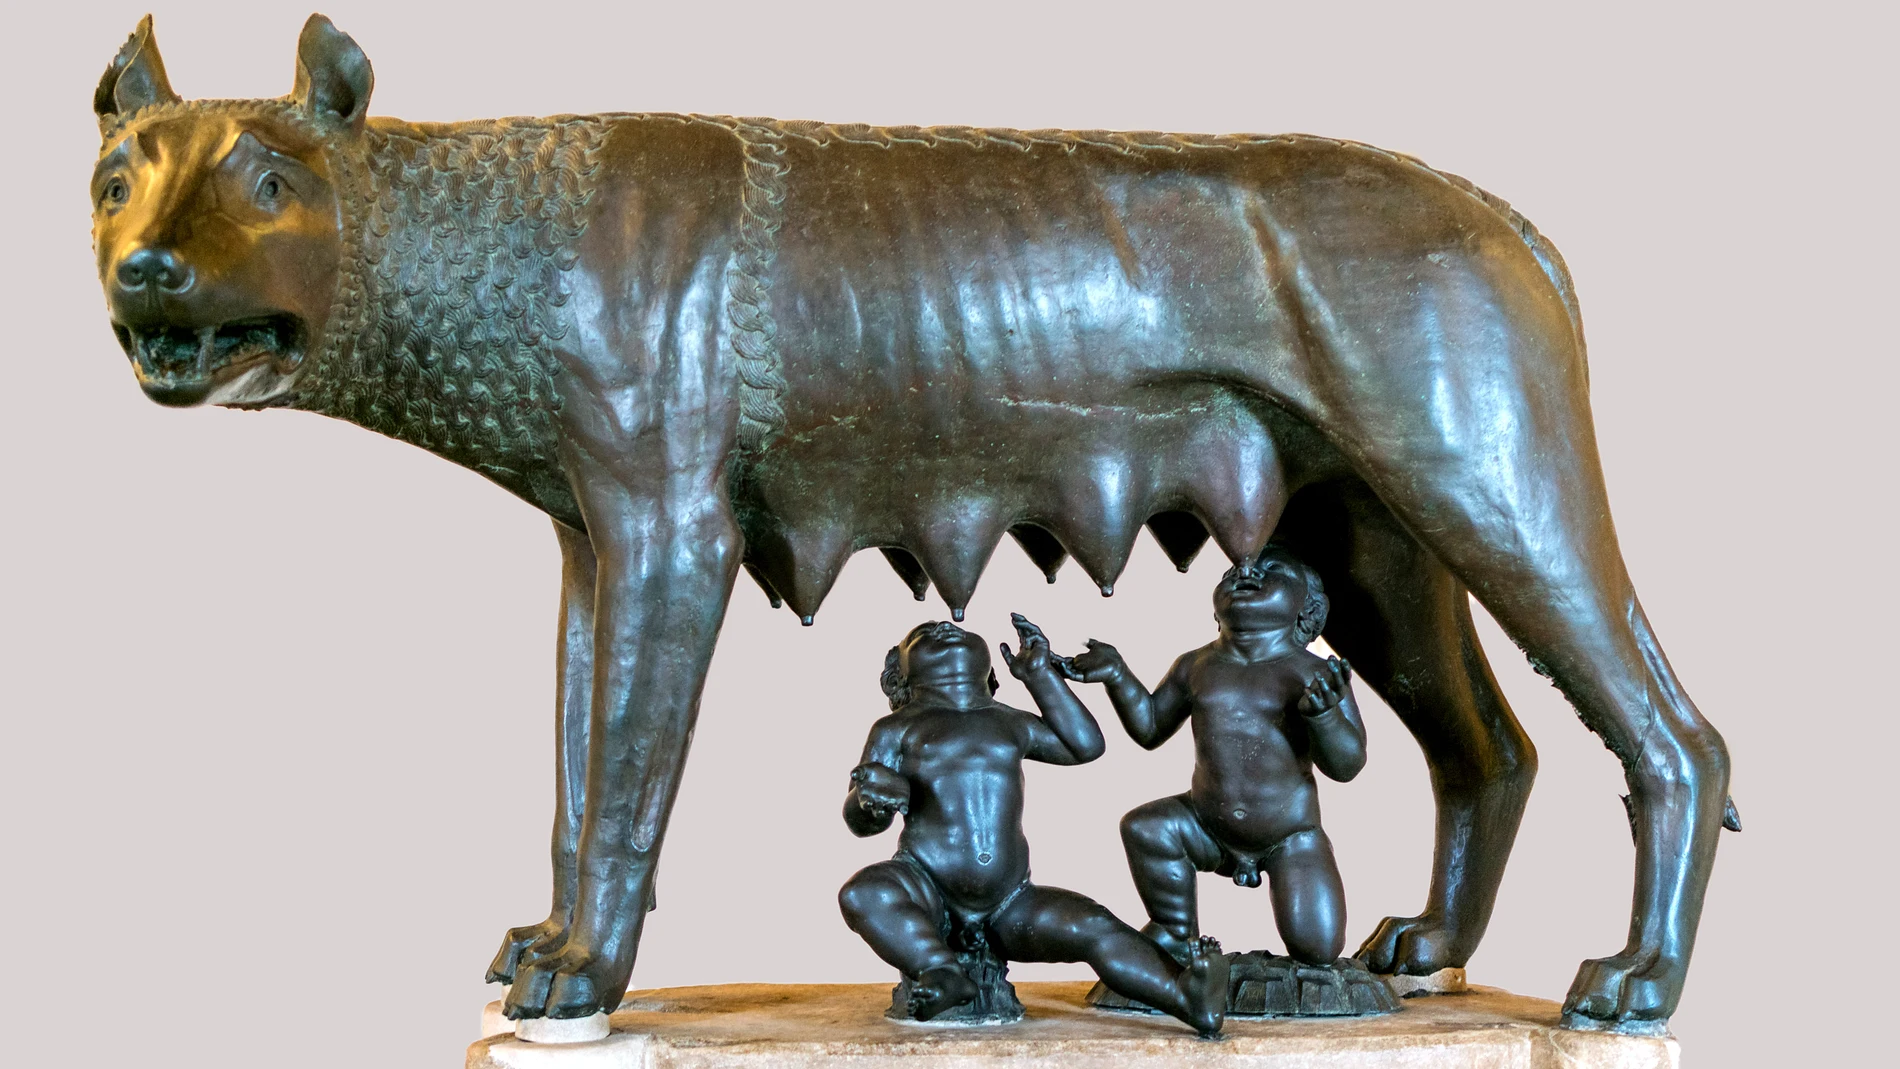  Escultura de bronce conocida como la loba capitolina. Museos Capitolinos, Roma